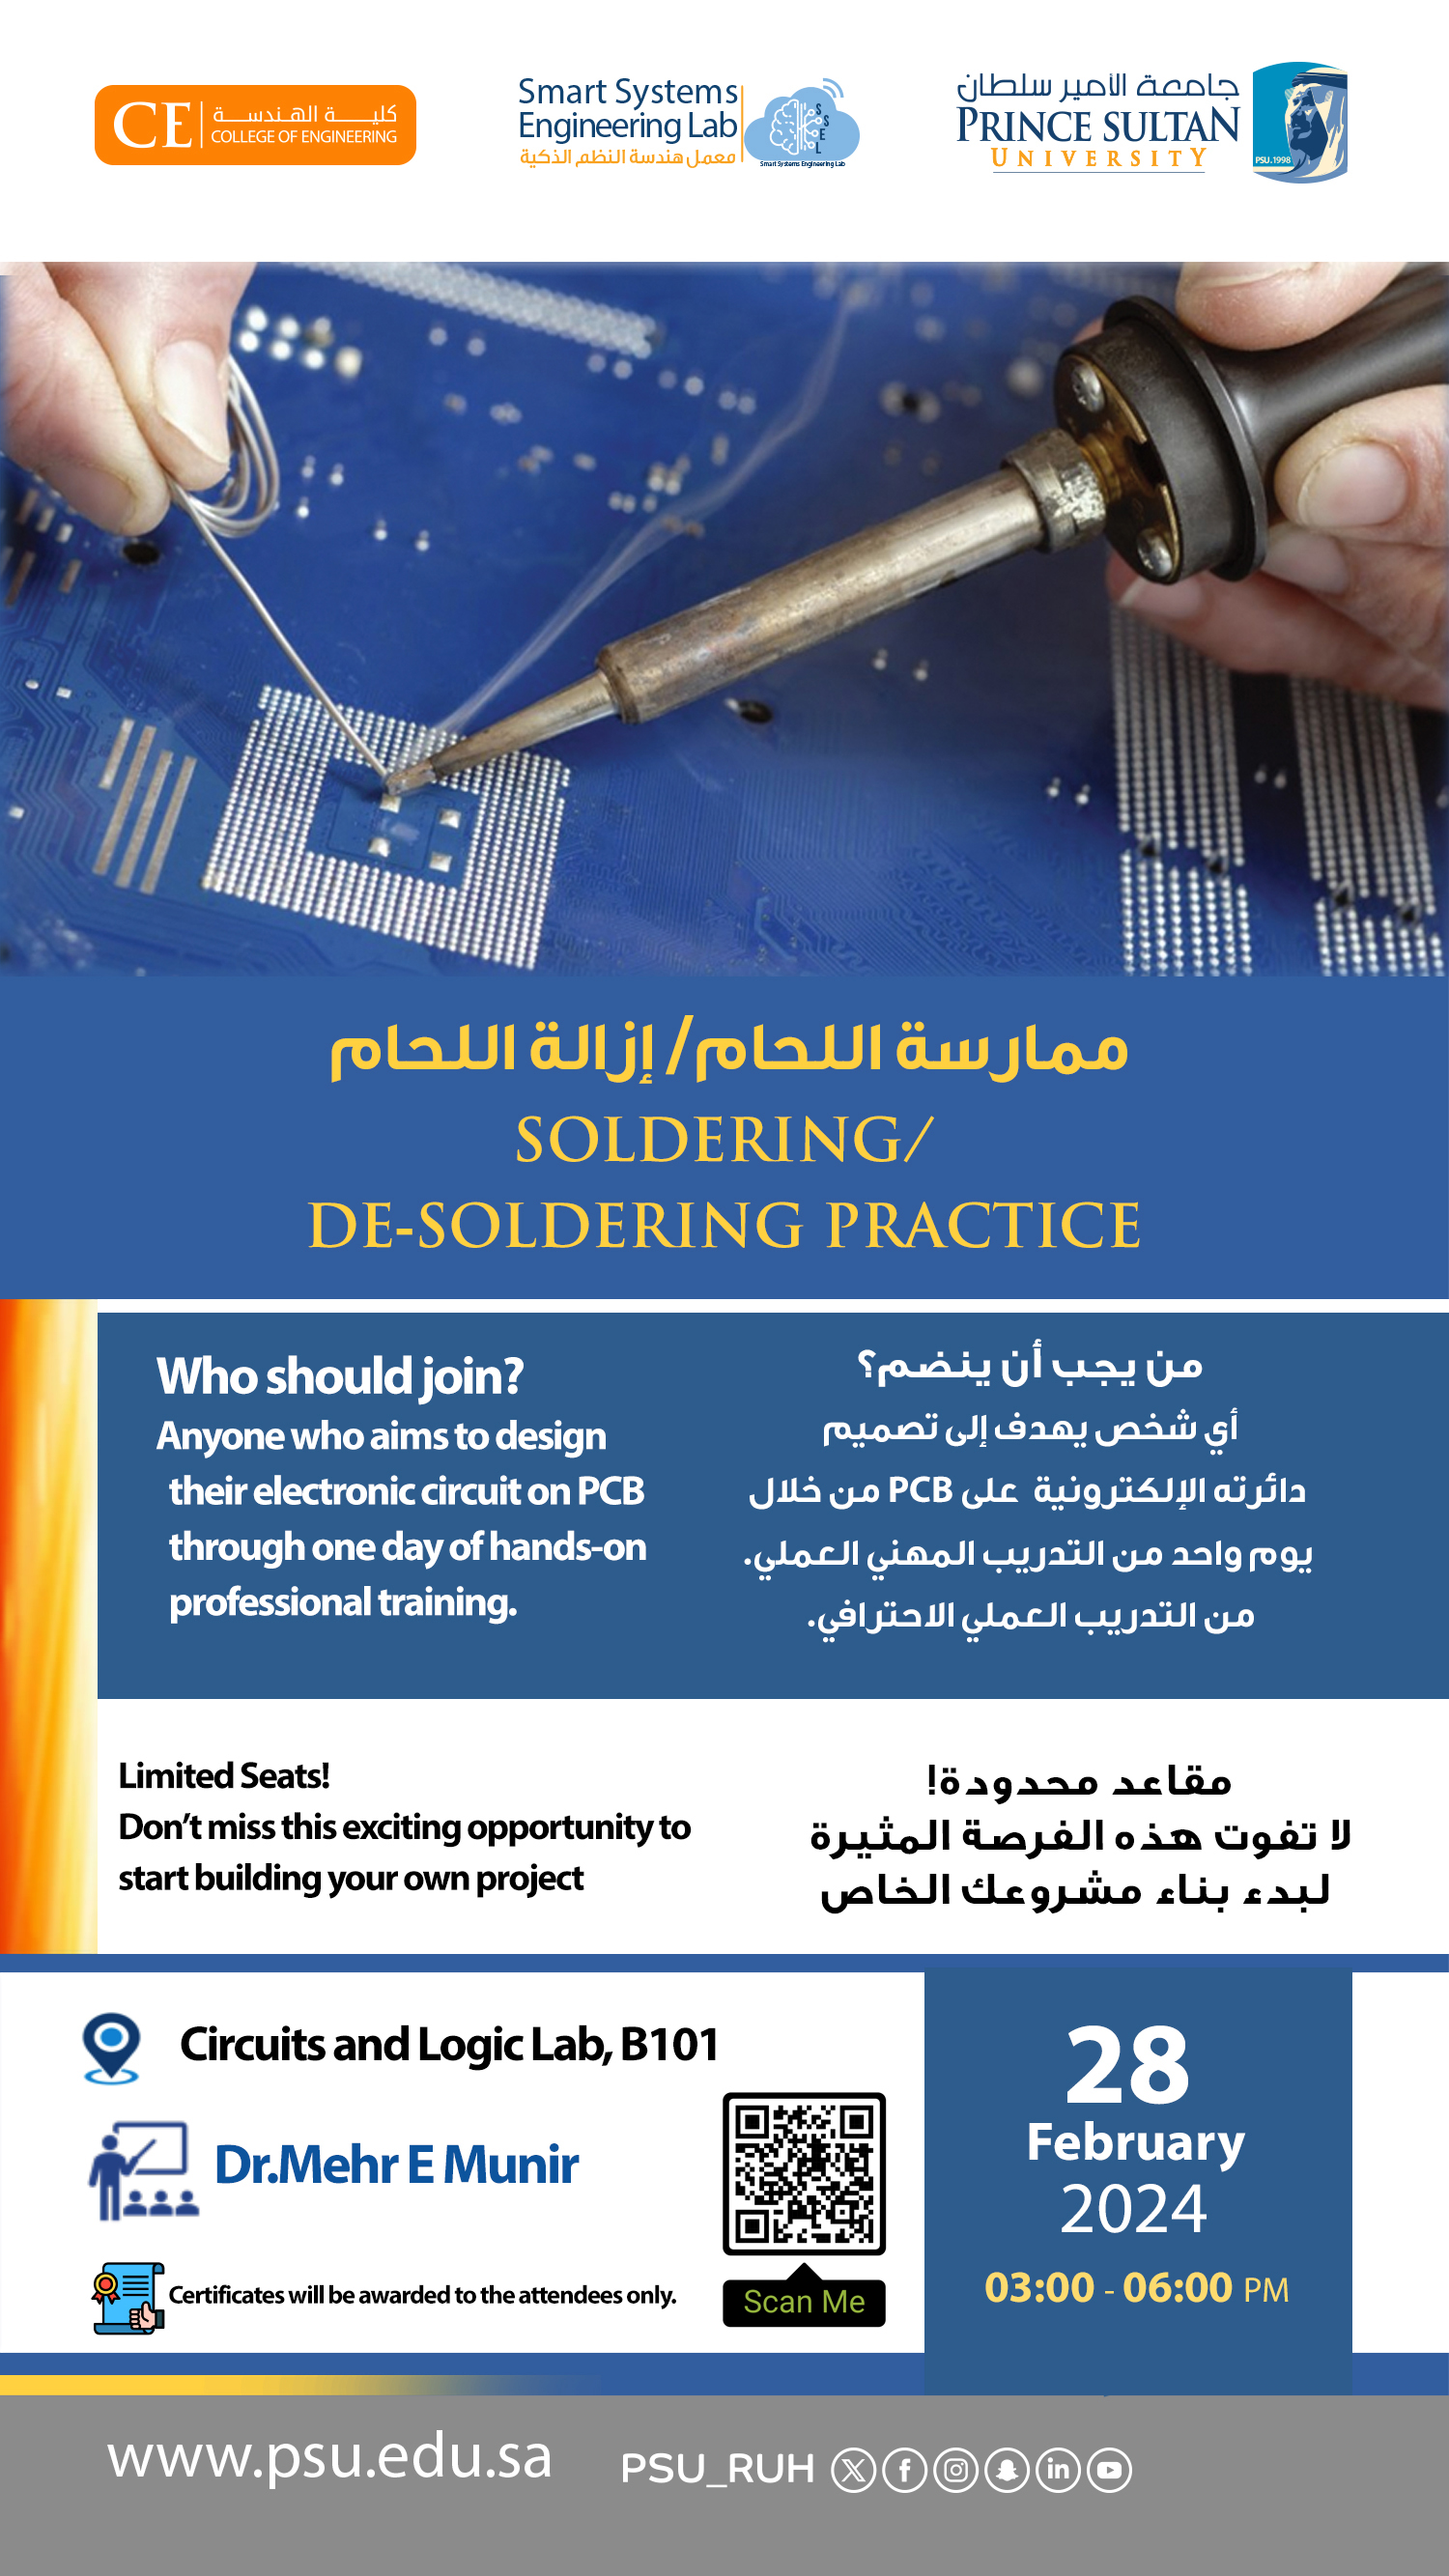 Workshop on soldering/de-soldering